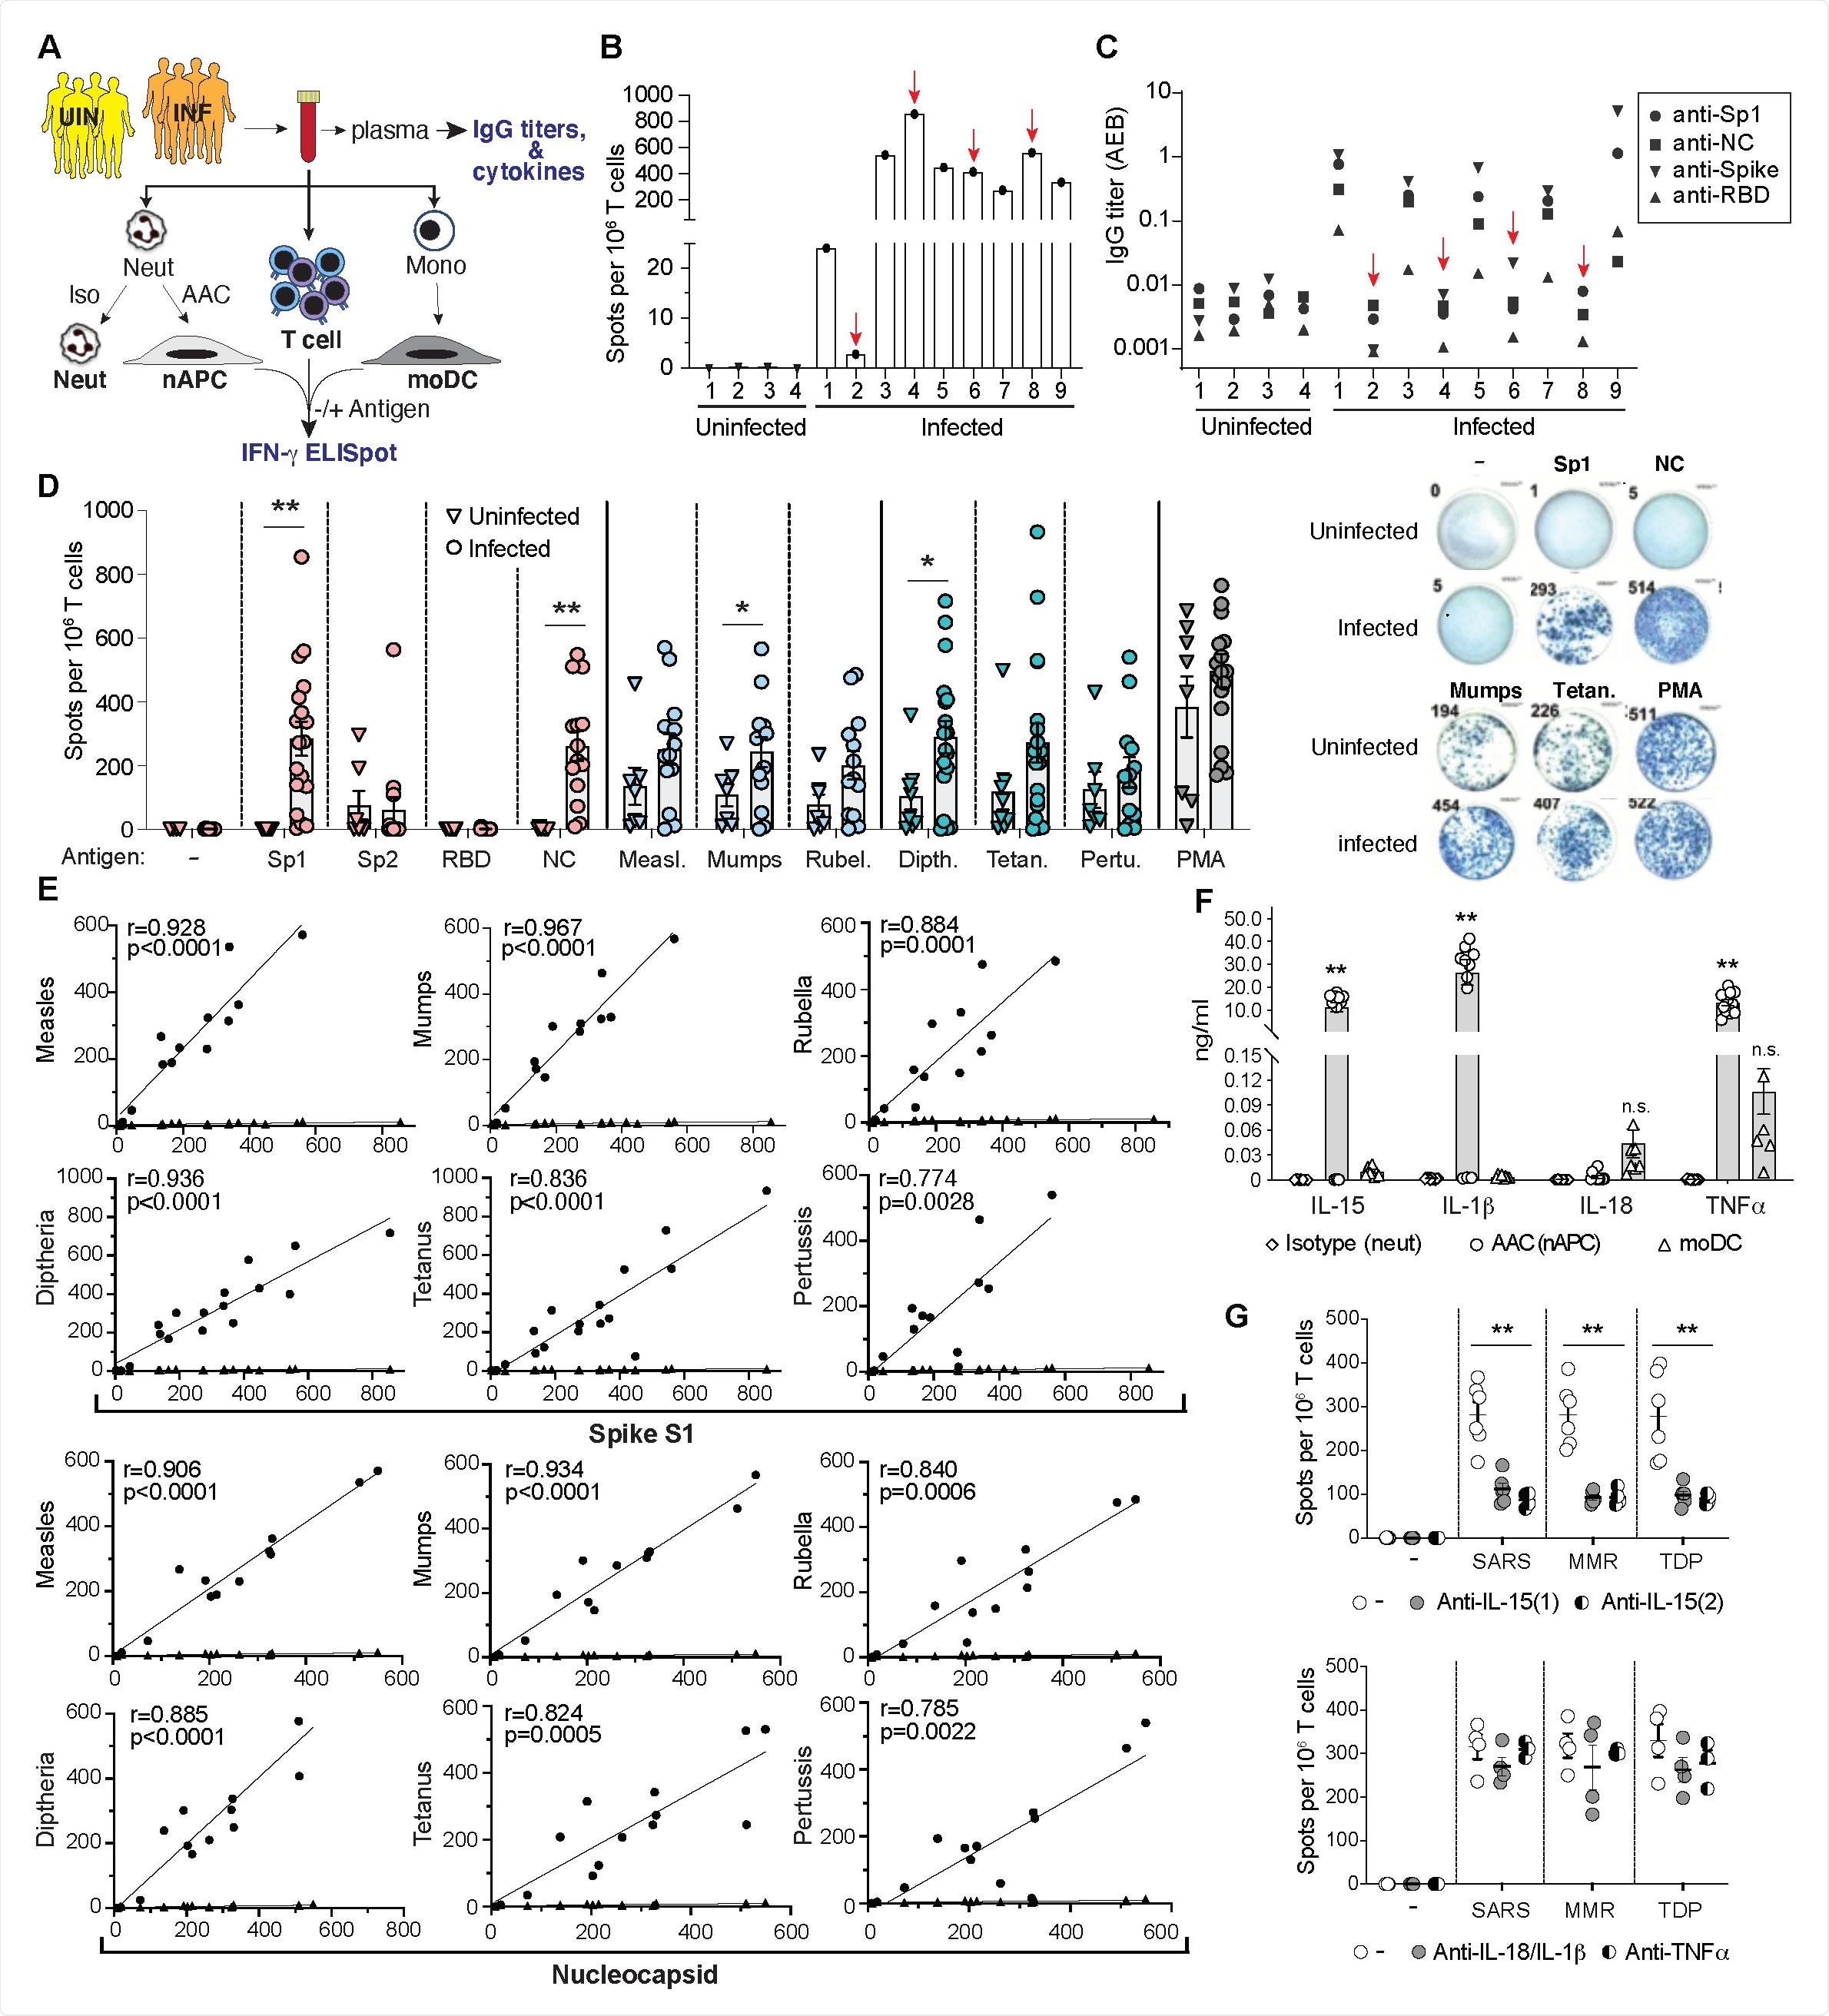 Reacciones del linfocito T a SARS-CoV-2, antígenos del MMR y de Tdap en SARS-CoV-2 infectados y donantes no infectados